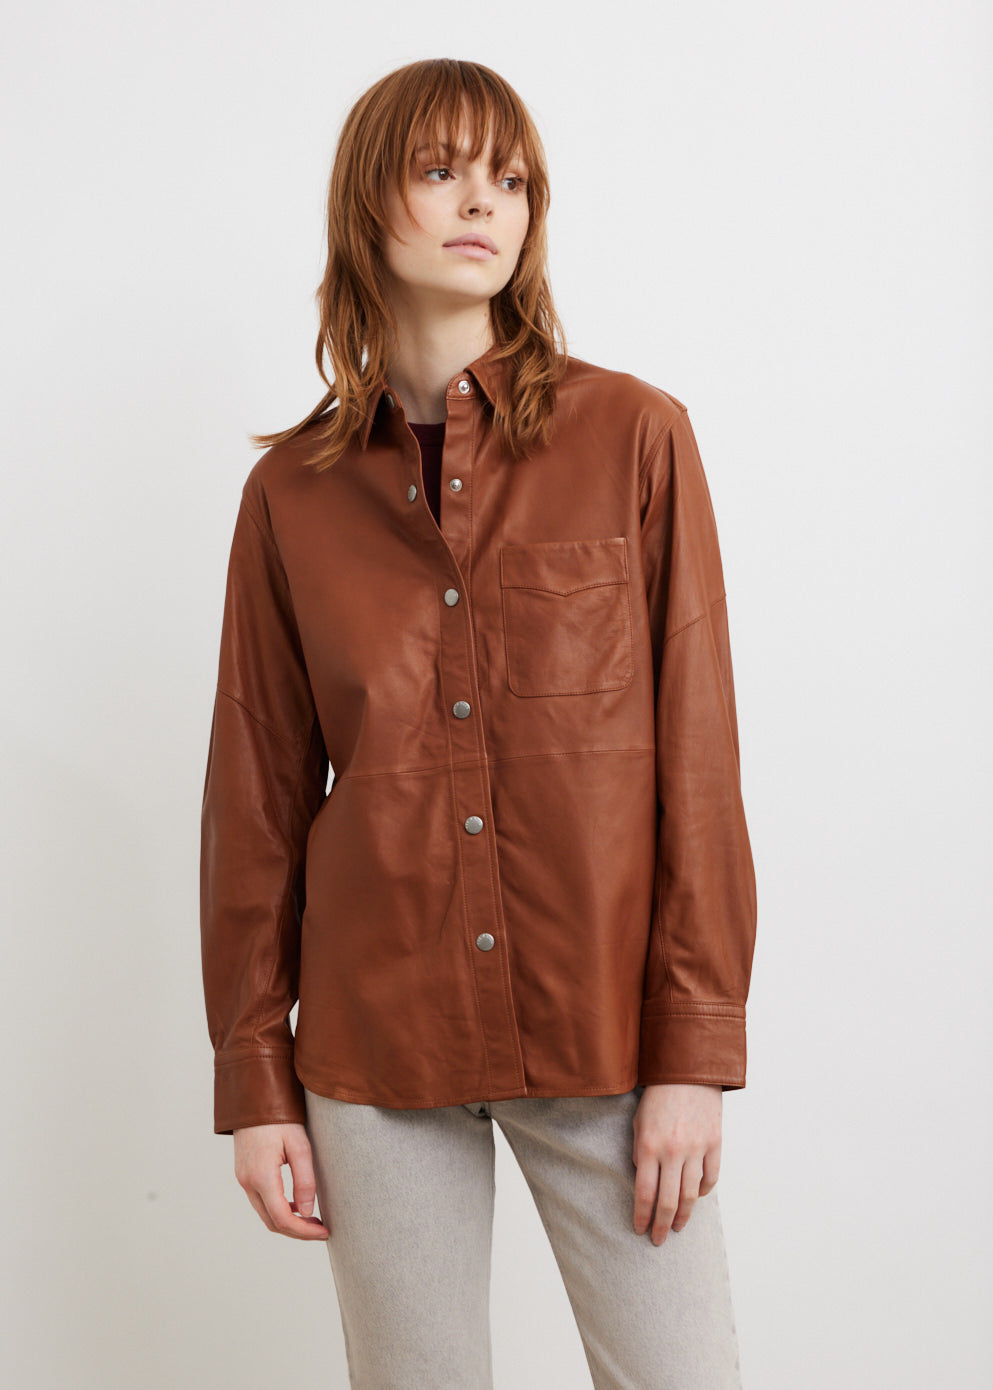 Jack Leather Shirt